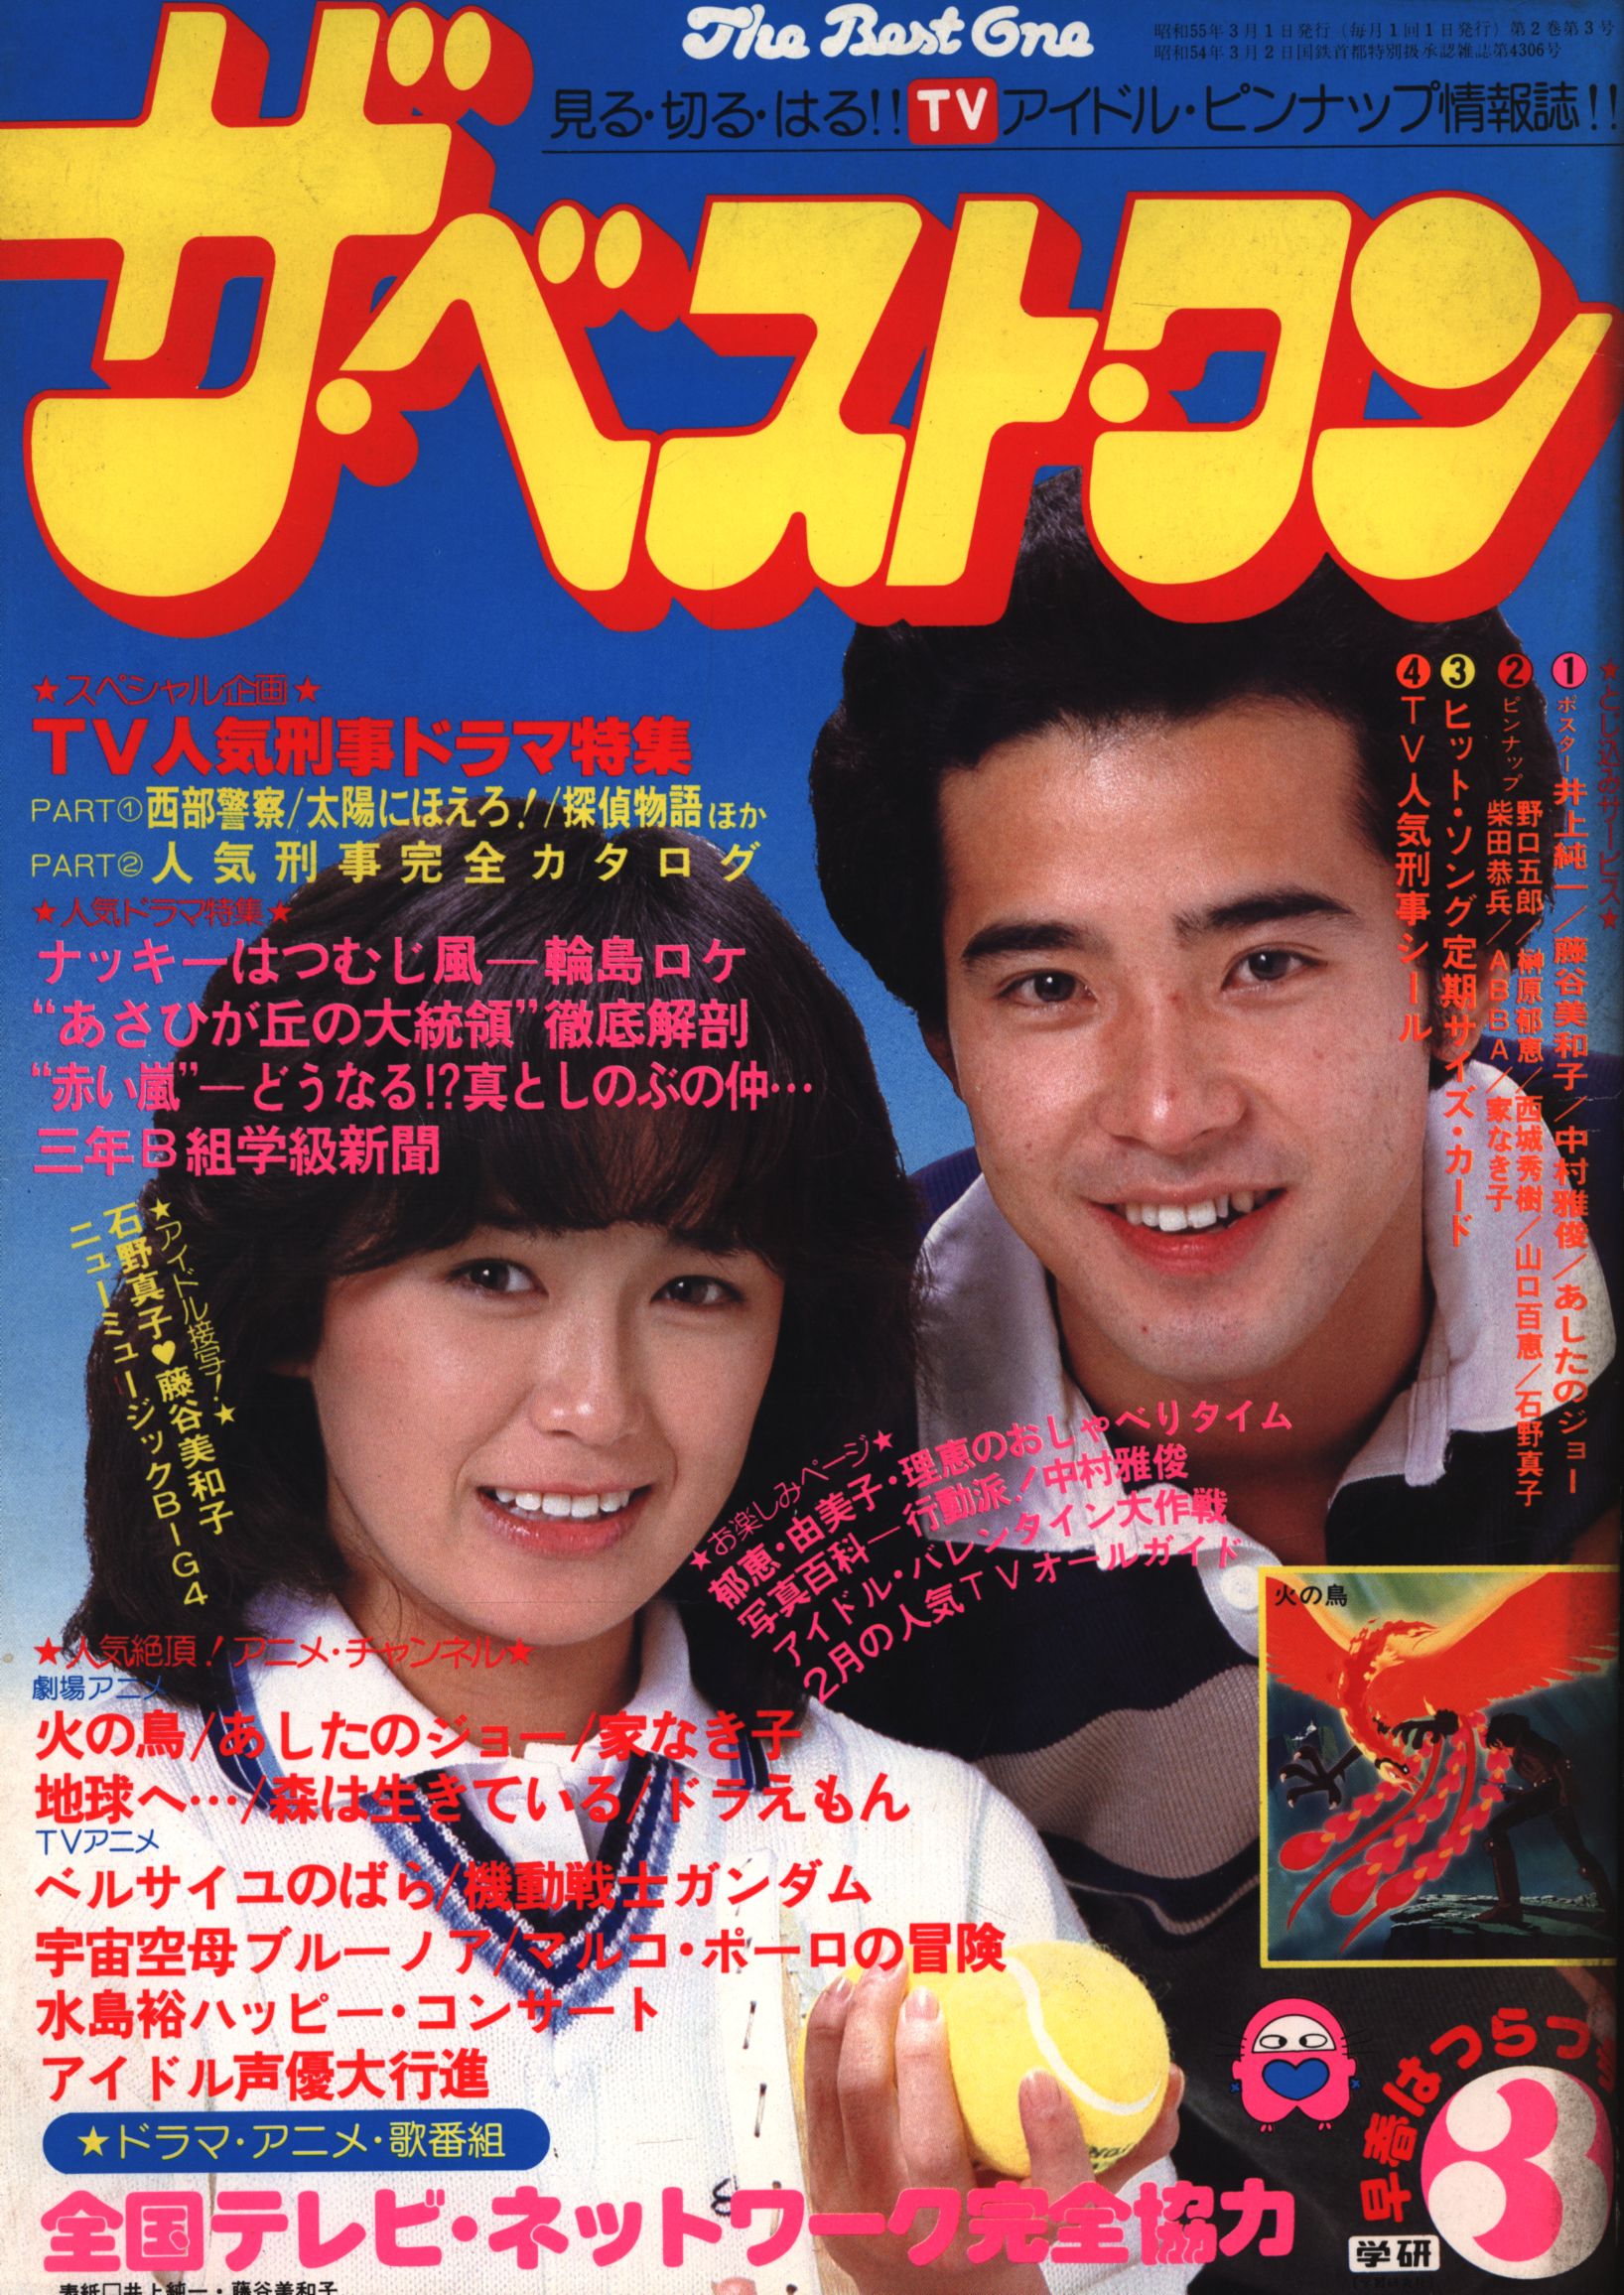 売れ筋がひ贈り物 藤谷美和子 1980年3月号 & 8003 井上純一 ザ・ベスト 